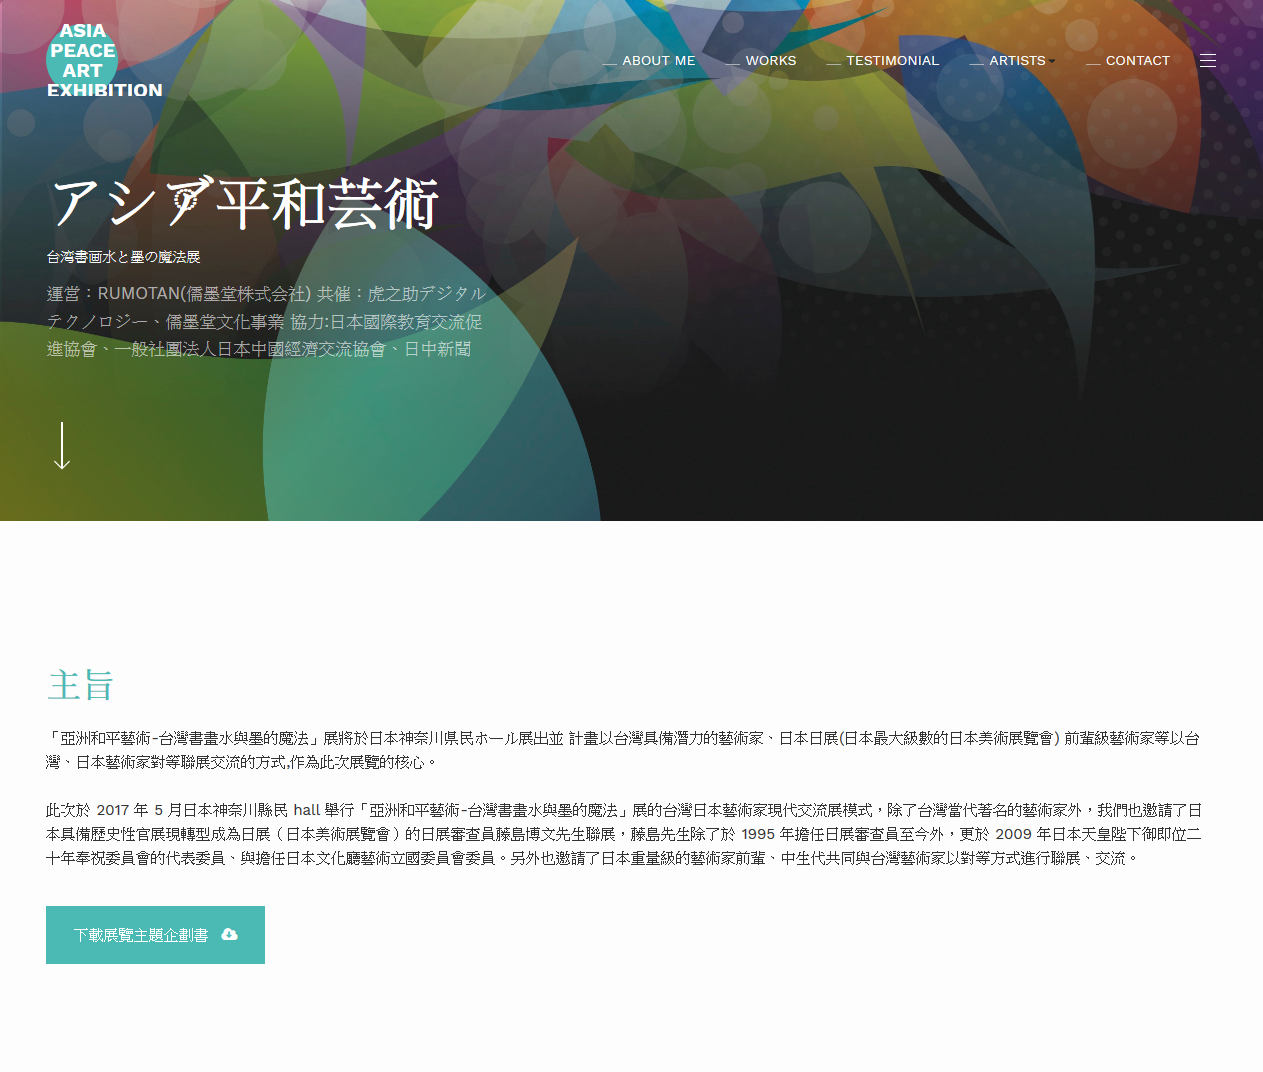 アジア平和芸术,台湾书画水と墨の魔法展官方网站